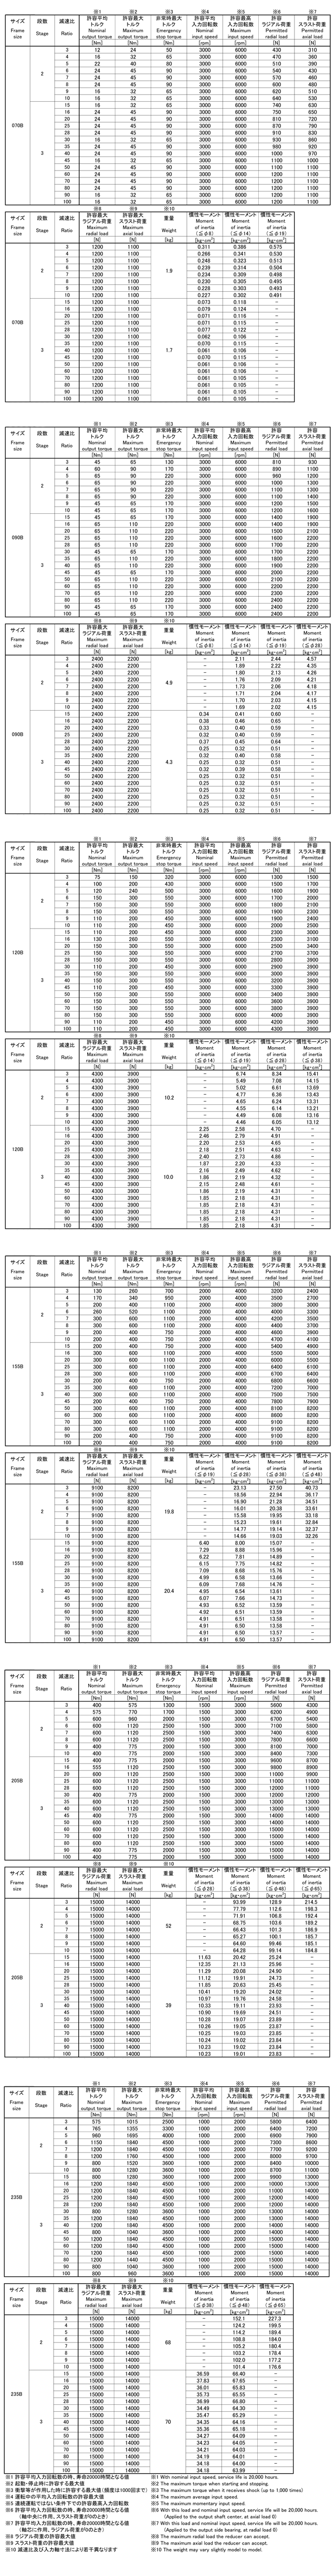 shimpo减速机EVL系列规格列表